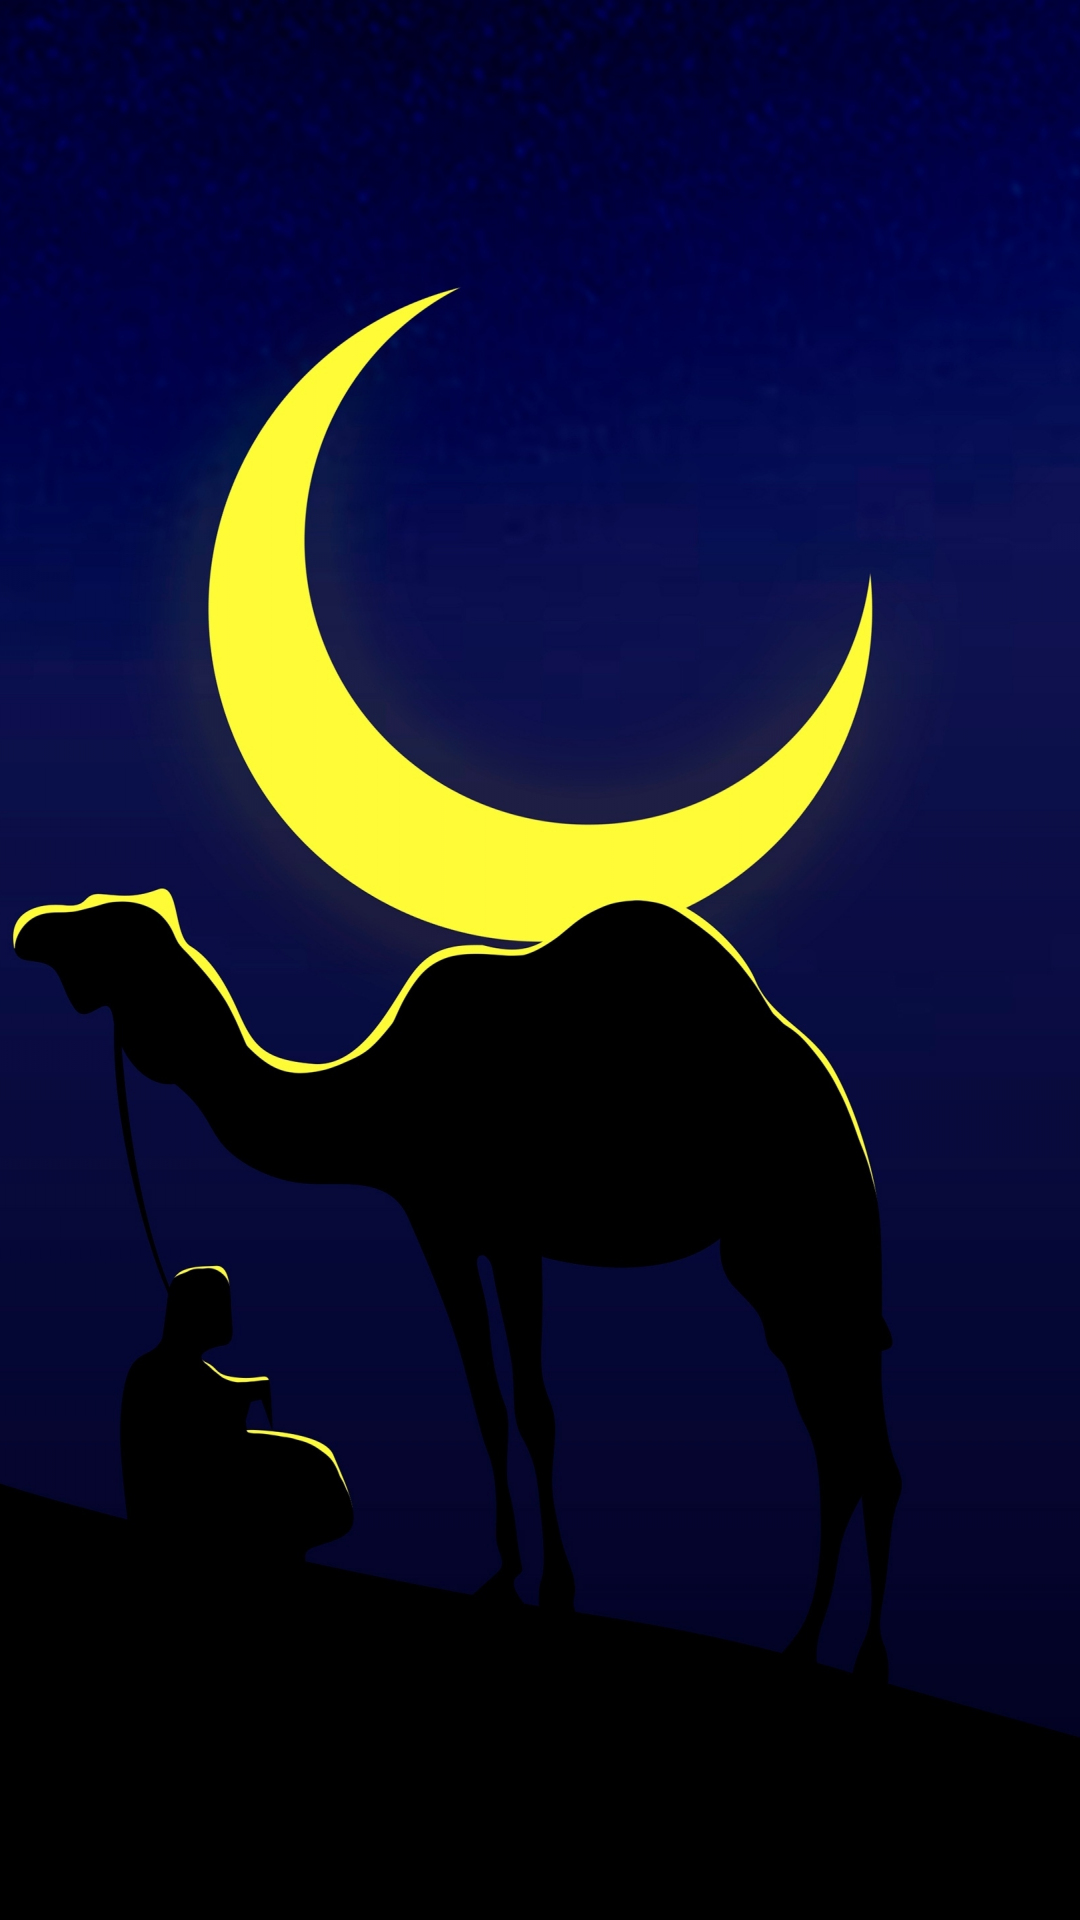 Camel and his master, moon, minimal, 1080x1920 wallpaper